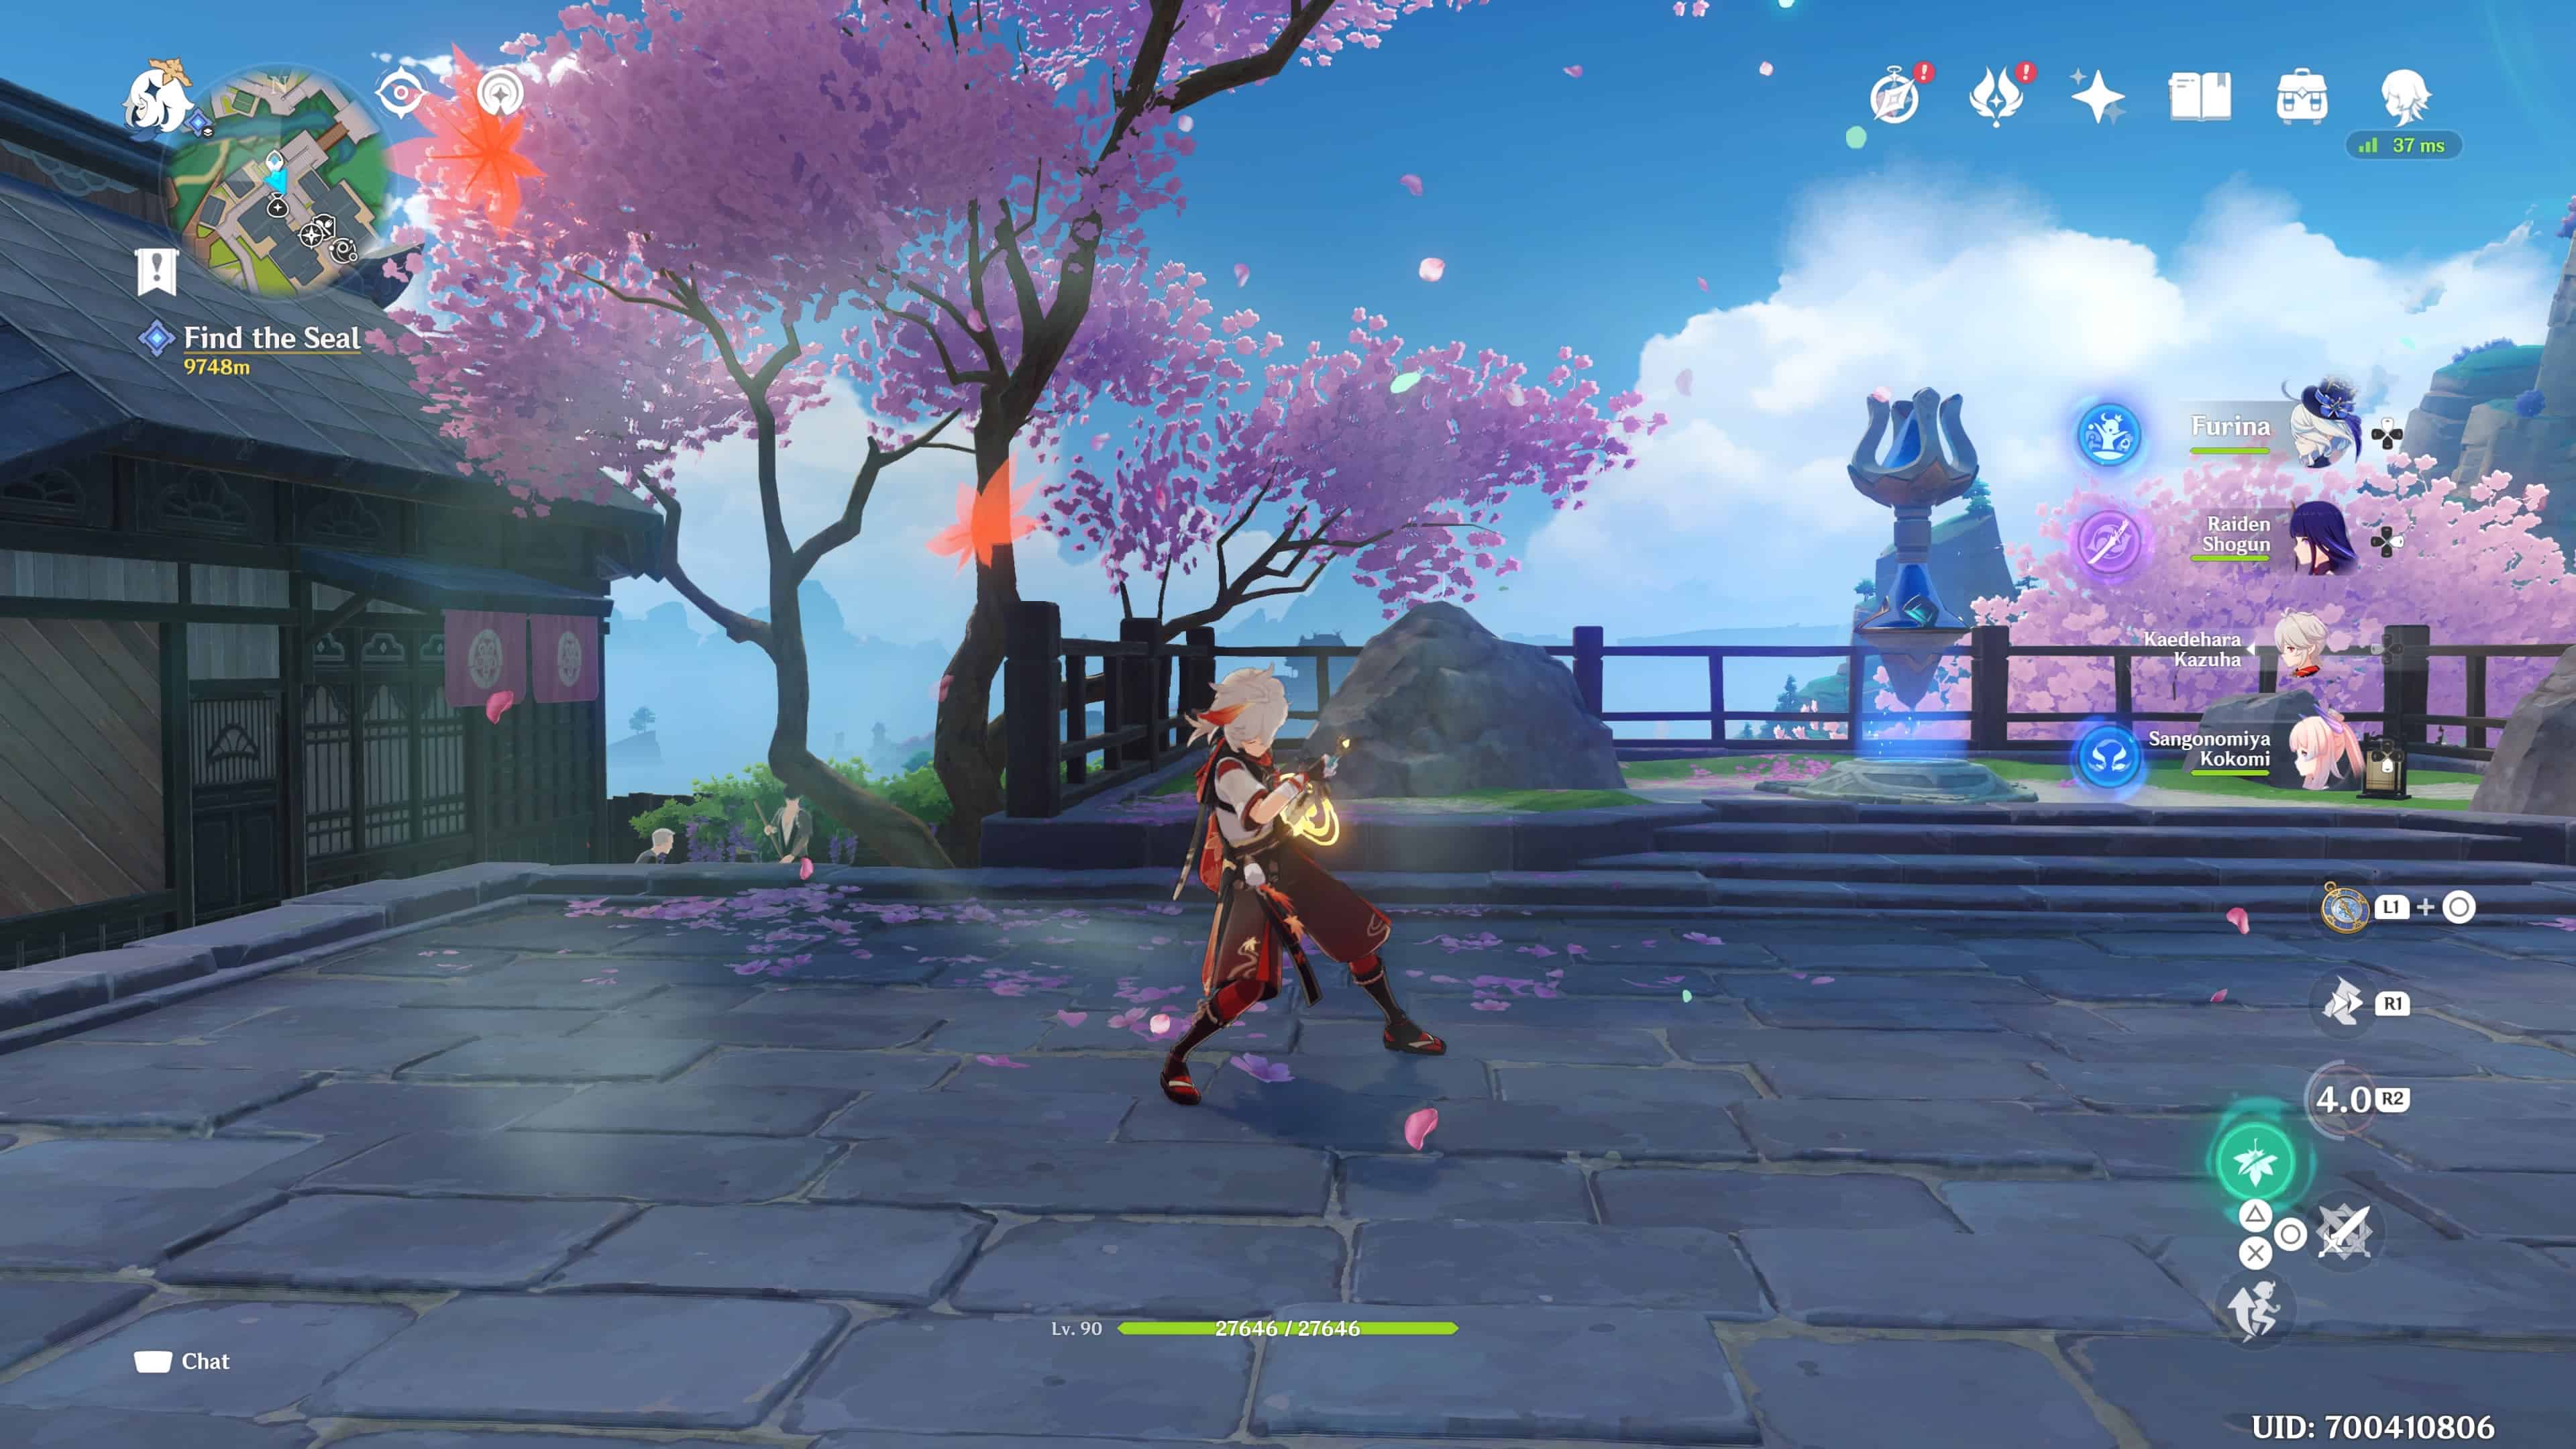 A screenshot showcasing the character Kazuha wielding his best weapons in Genshin Impact.